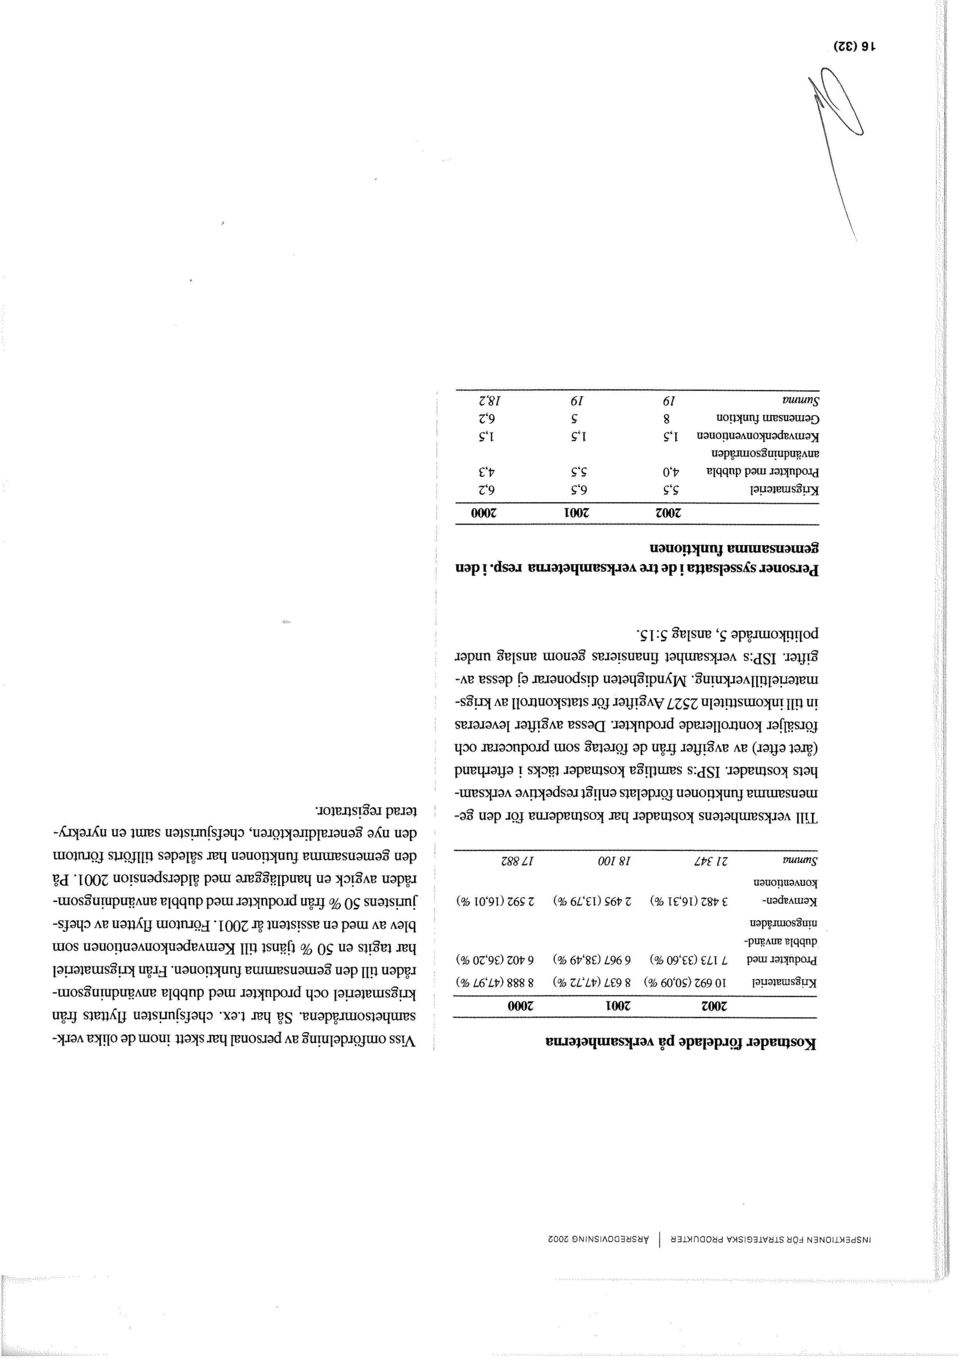 Från la~igsmateriel Produkter med 7 173 (33,60 %) 6 967 (38,49 %) 6 402 (36,20 %) dubb1aan~anaai~gsornr~den blev av med en assistent år 2001.